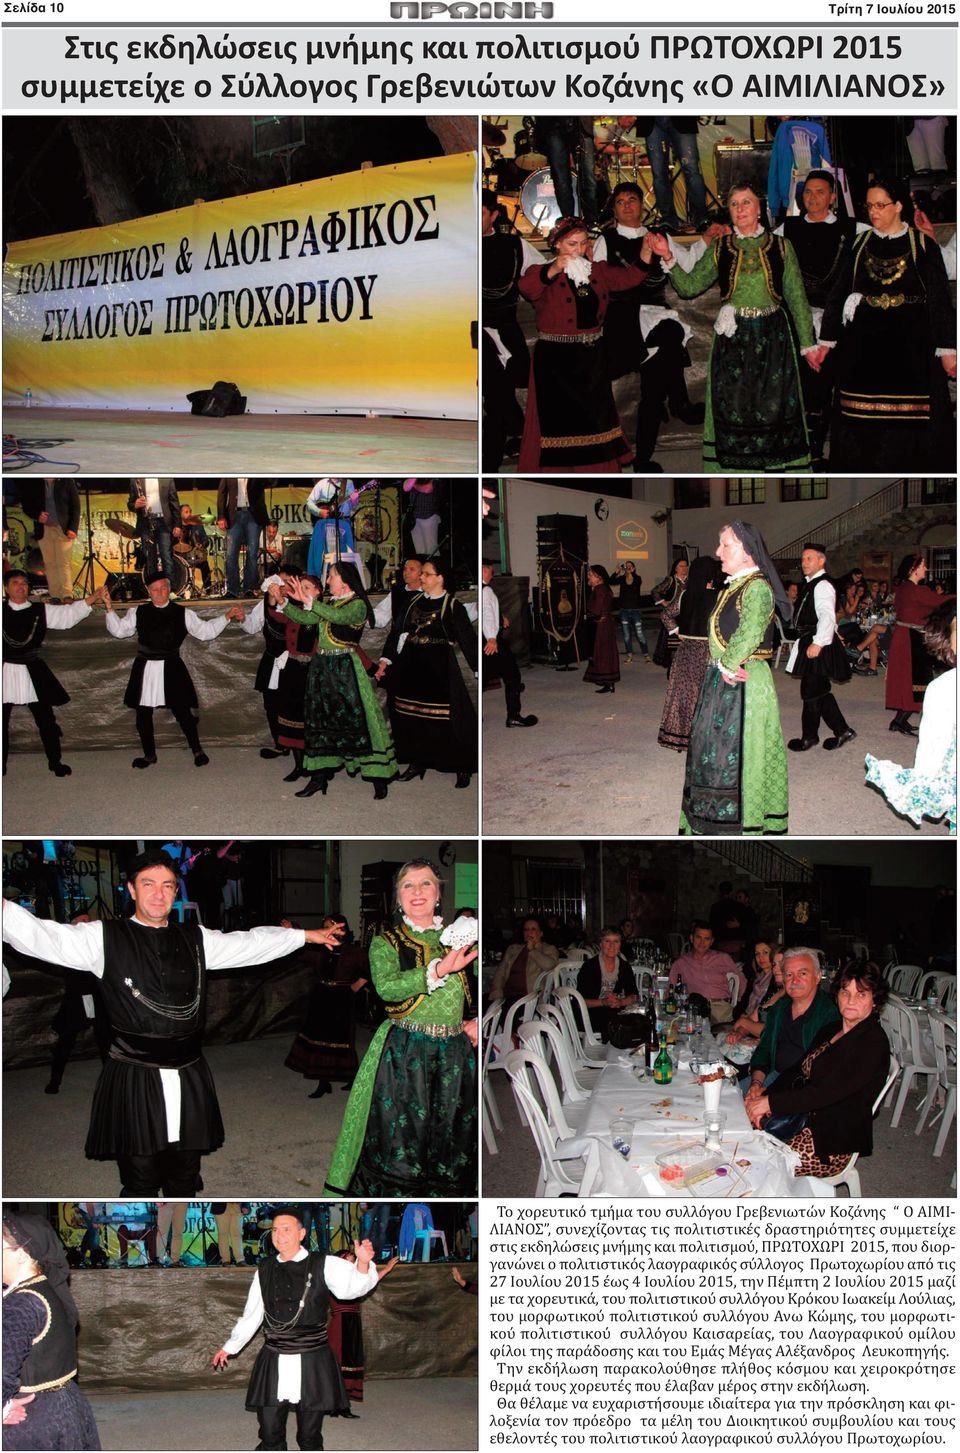 Ιουλίου 2015 έως 4 Ιουλίου 2015, την Πέμπτη 2 Ιουλίου 2015 μαζί με τα χορευτικά, του πολιτιστικού συλλόγου Κρόκου Ιωακείμ Λούλιας, του μορφωτικού πολιτιστικού συλλόγου Ανω Κώμης, του μορφωτικού